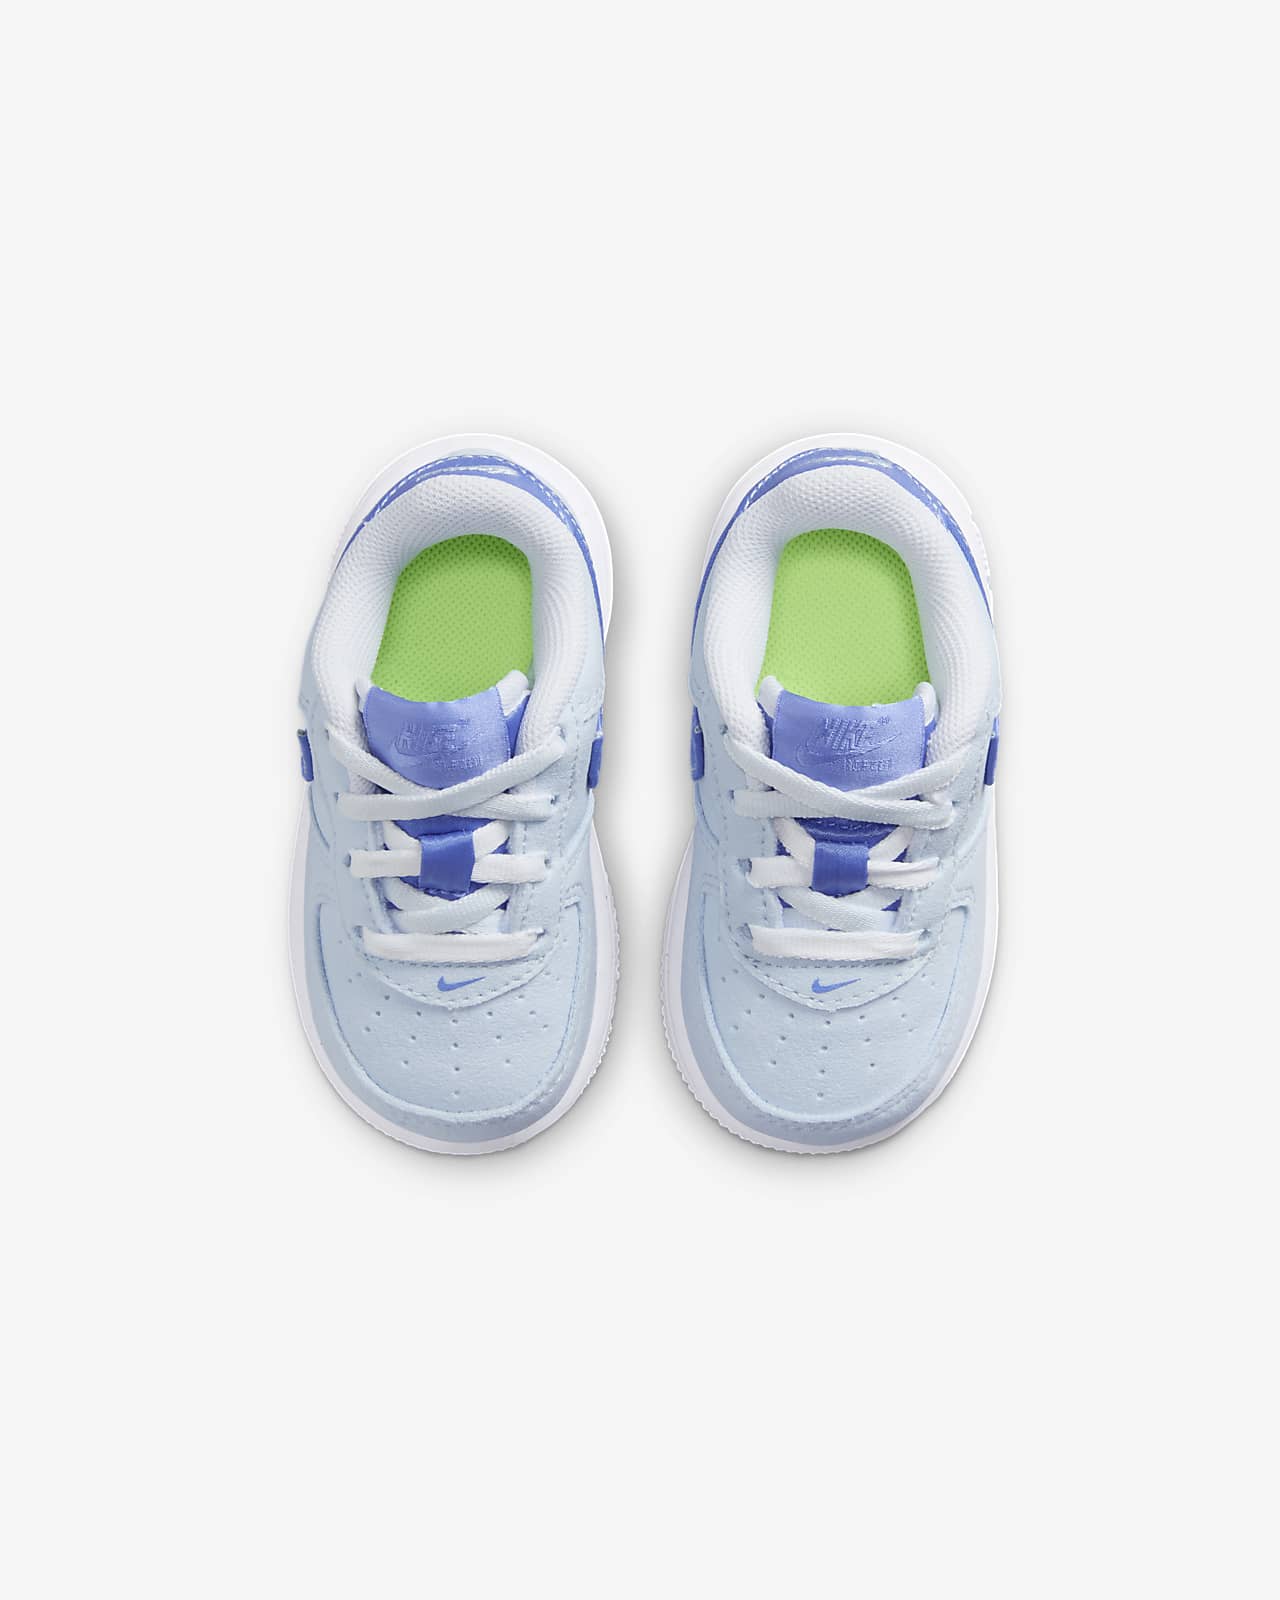 Calzado para bebé e infantil Nike Force 1 LV8.